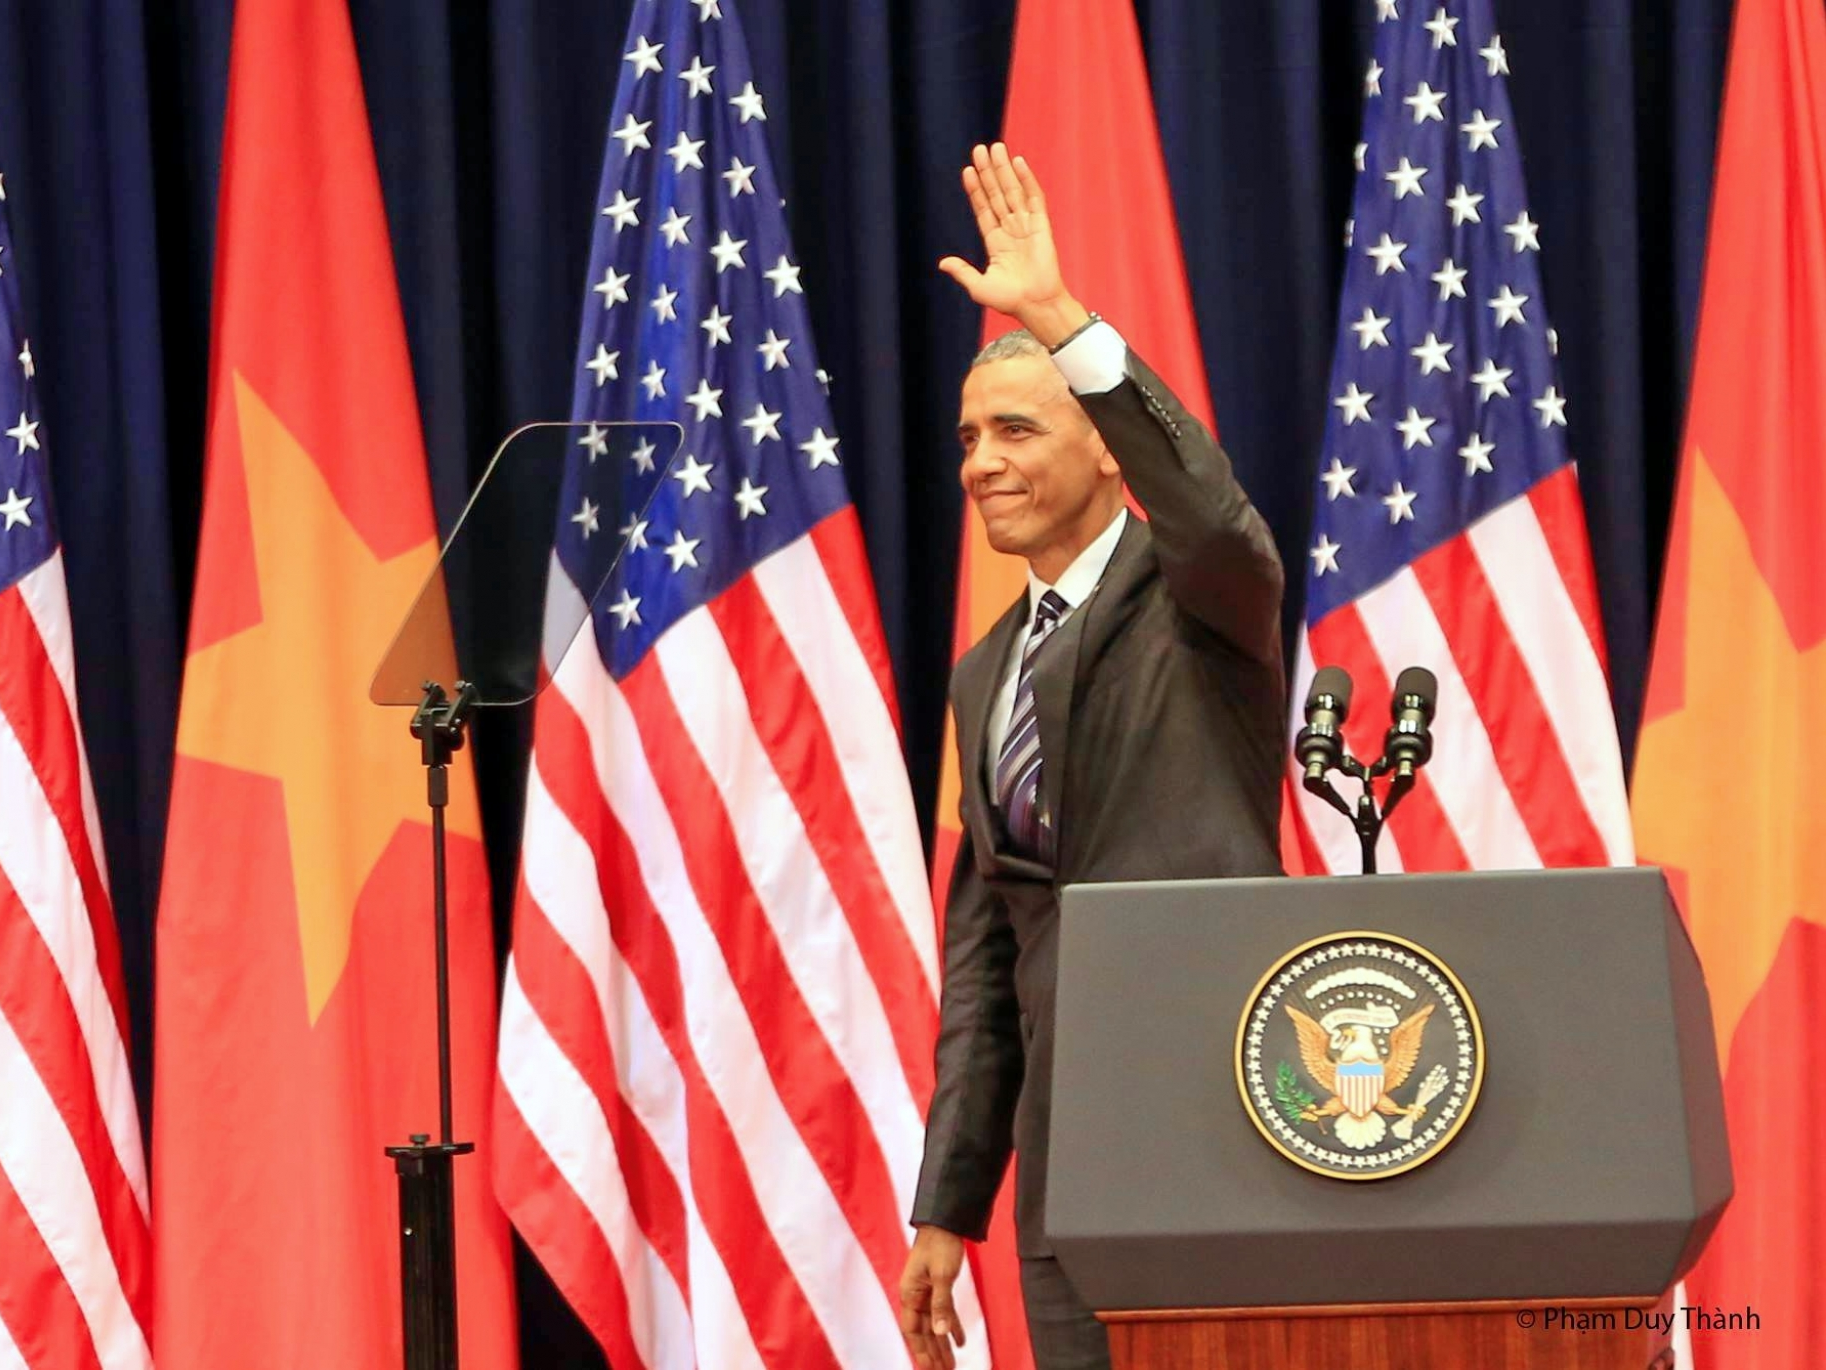 "Chuyến thăm của Obama tới Việt Nam thành công ngoài mong đợi"